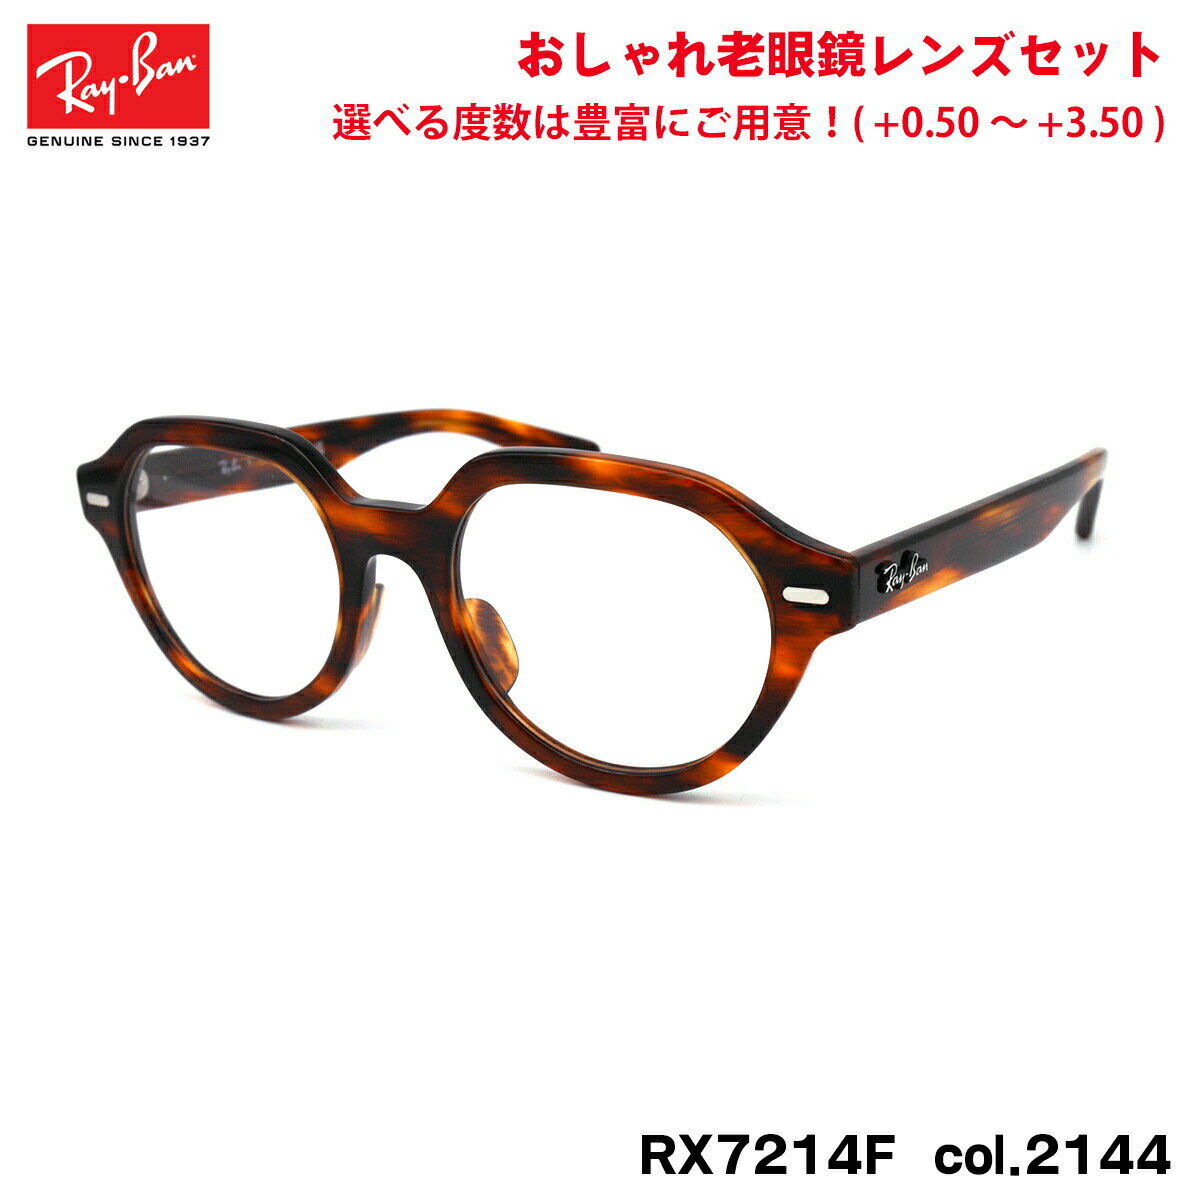 レイバン 老眼鏡 RX7214F (RB7214F) 2144 51mm Ray-Ban GINA ジーナ アジアンフィット UVカット ブルーライトカット